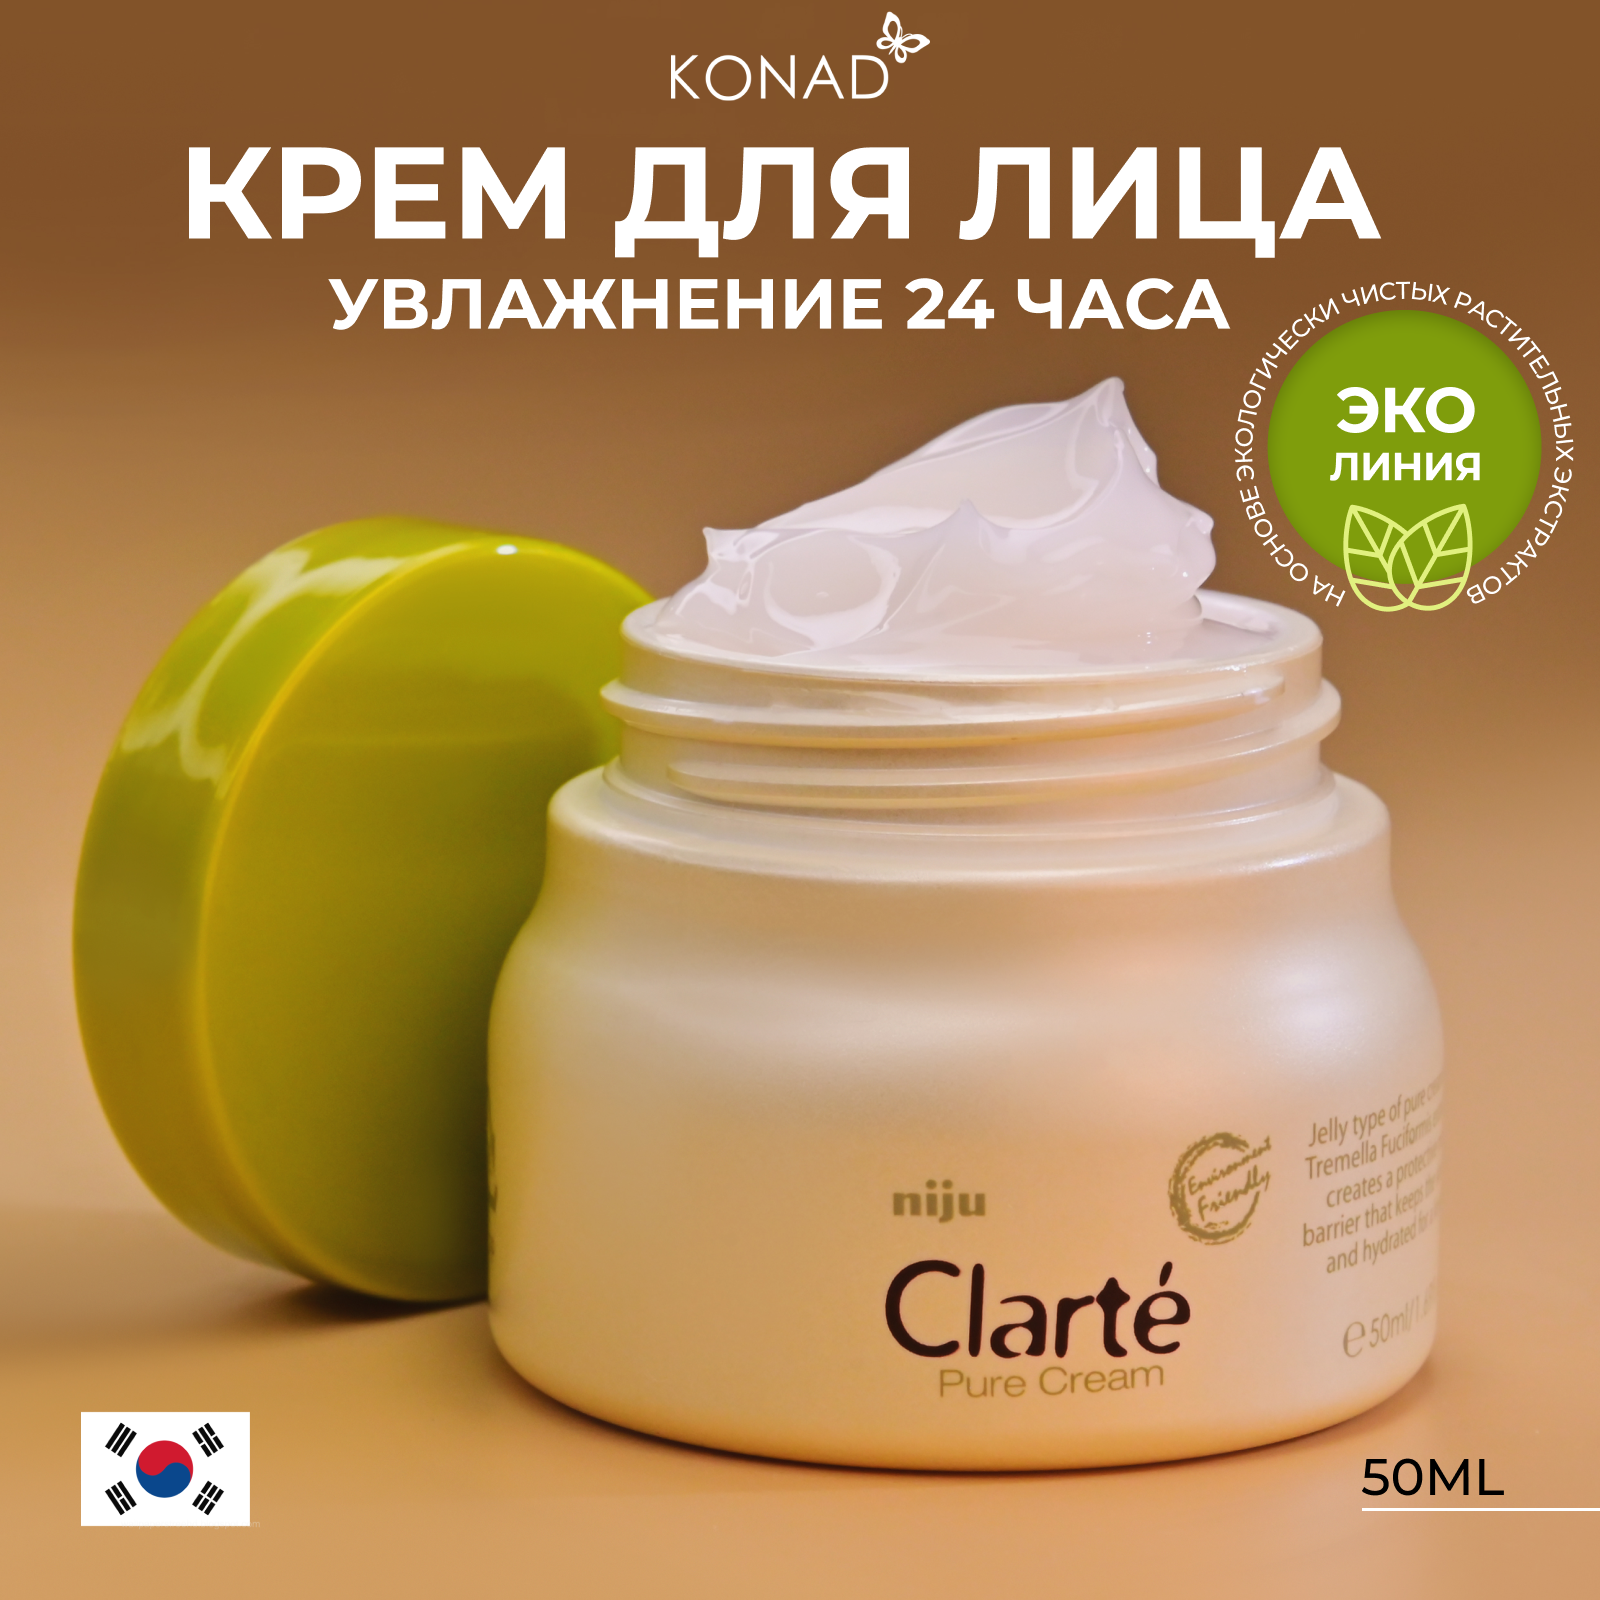 Крем для лица Konad Clart Pure Cream эко линия увлажняющий и успокаивающий 50мл